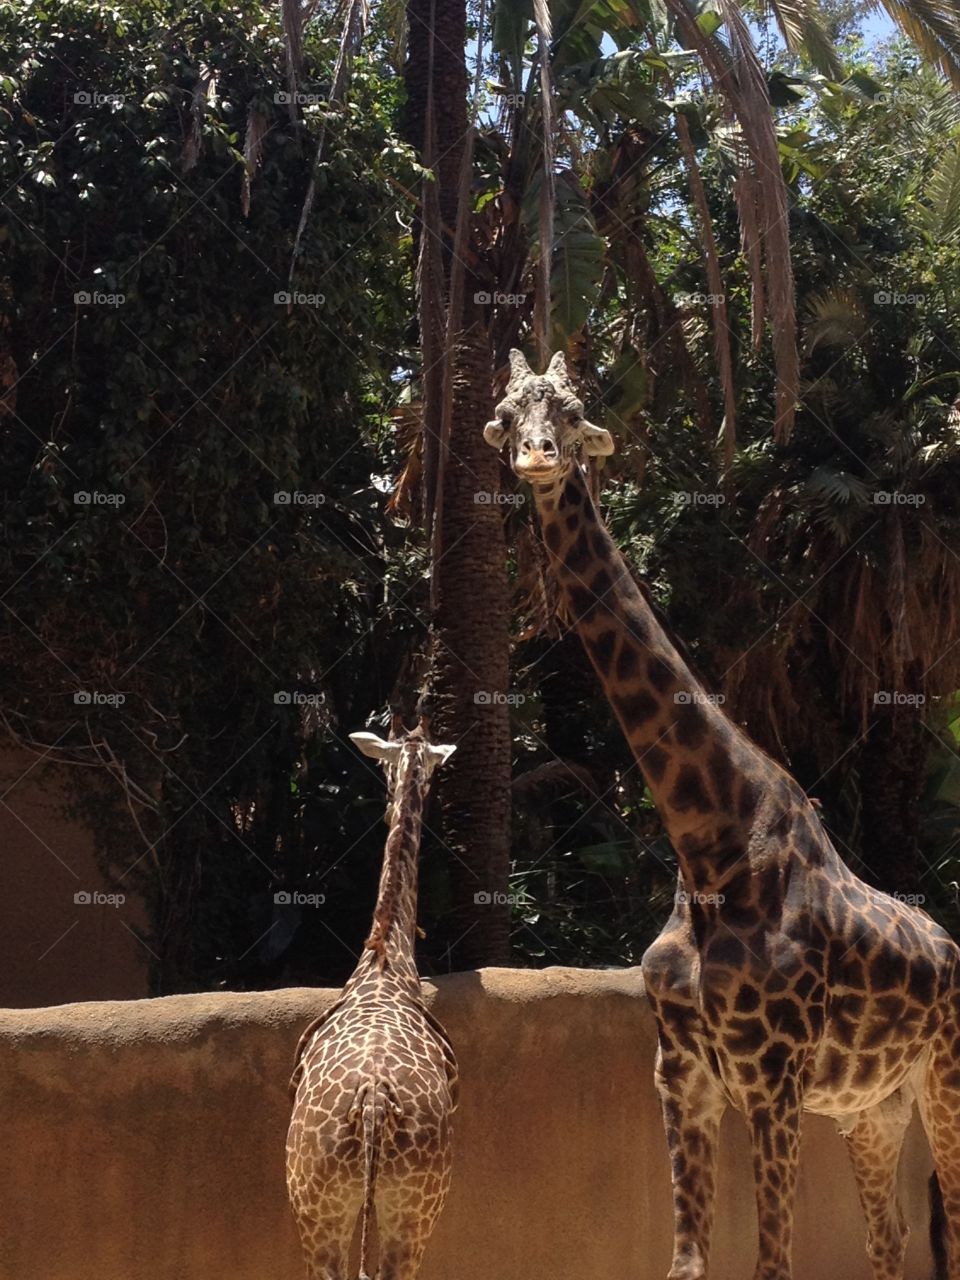 Giraffe mama and baby 